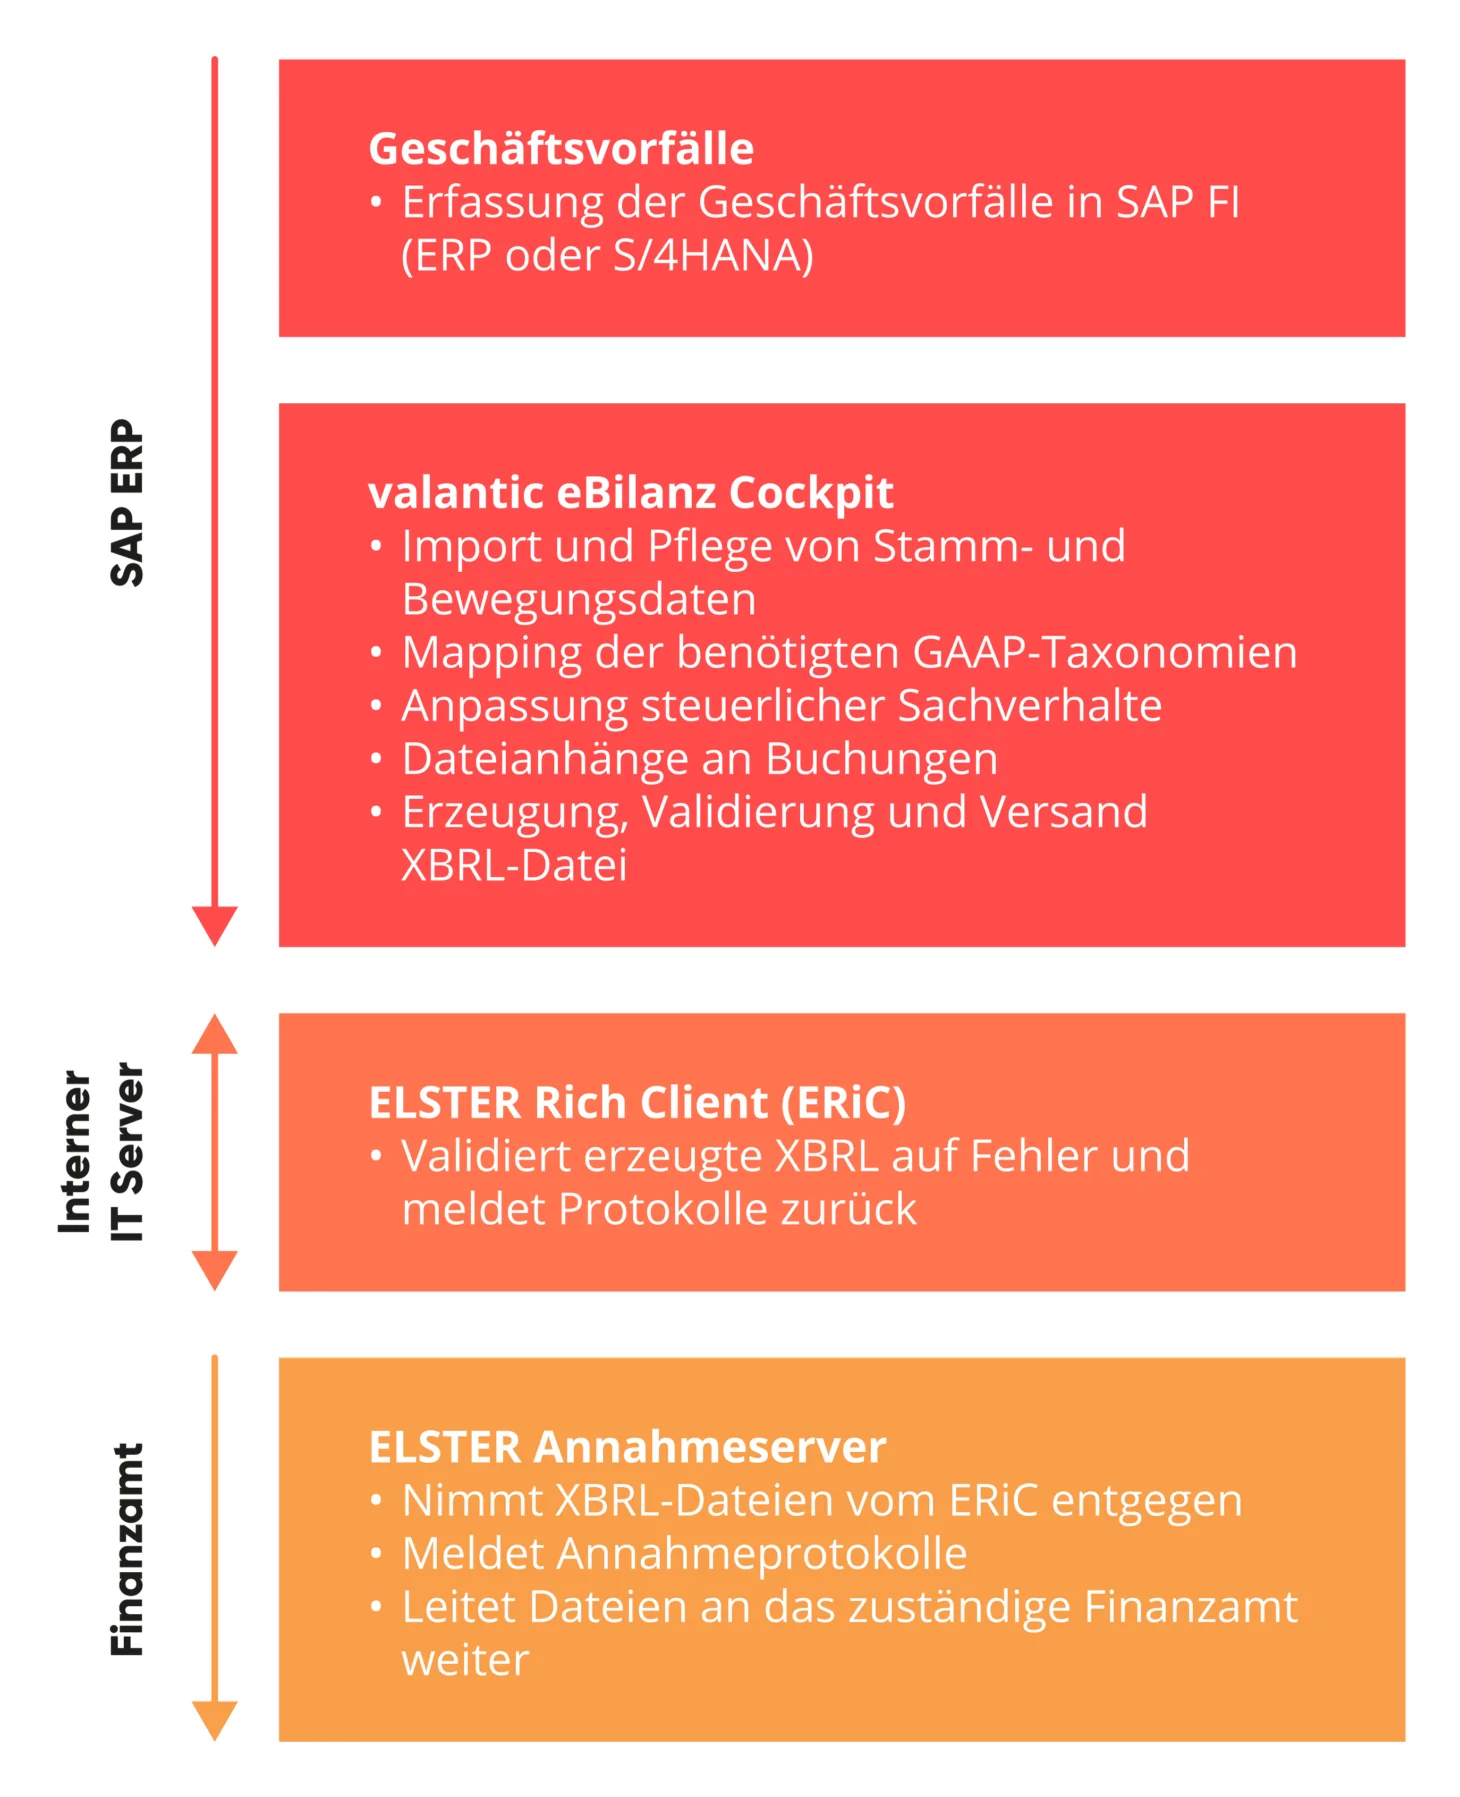 Infografik zum SAP Add-on eBilanz Cockpit von valantic